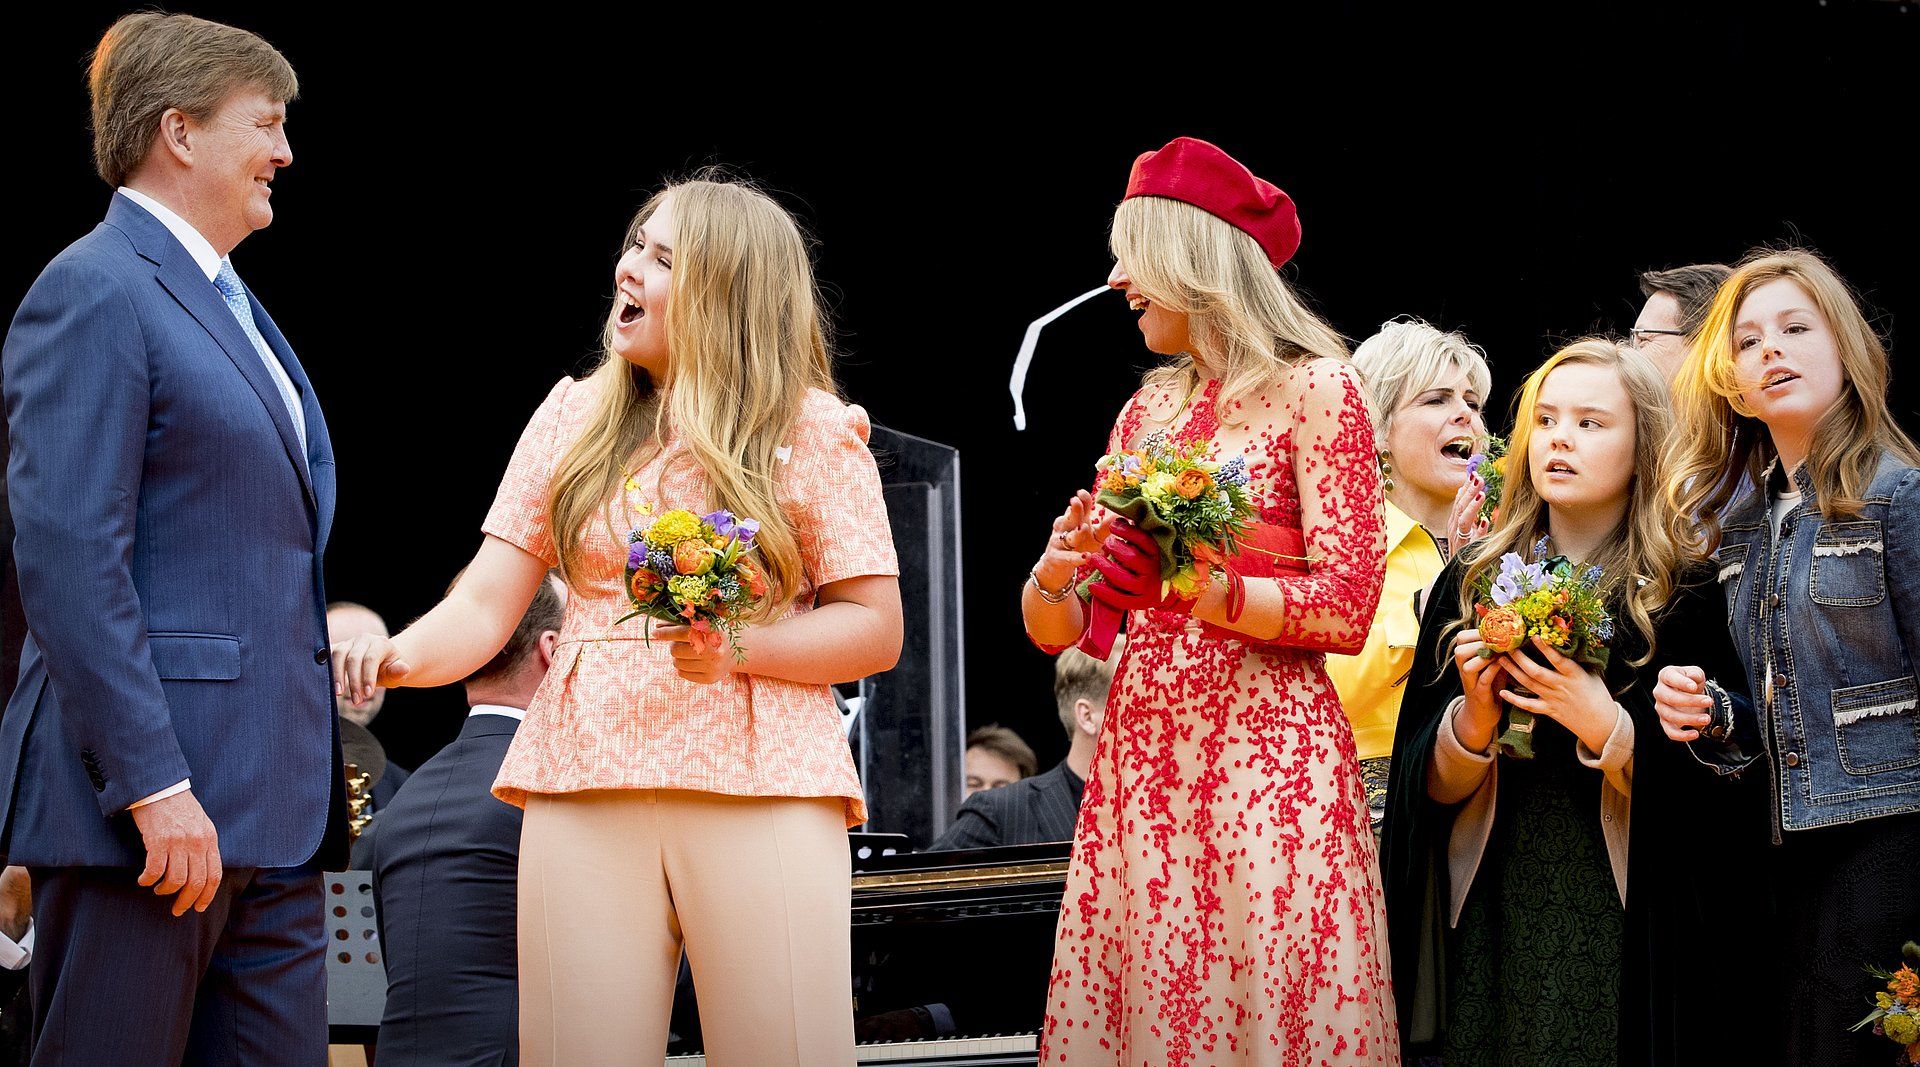 De prinsessen zingen hun vader toe tijdens Koningsdag in 2018.